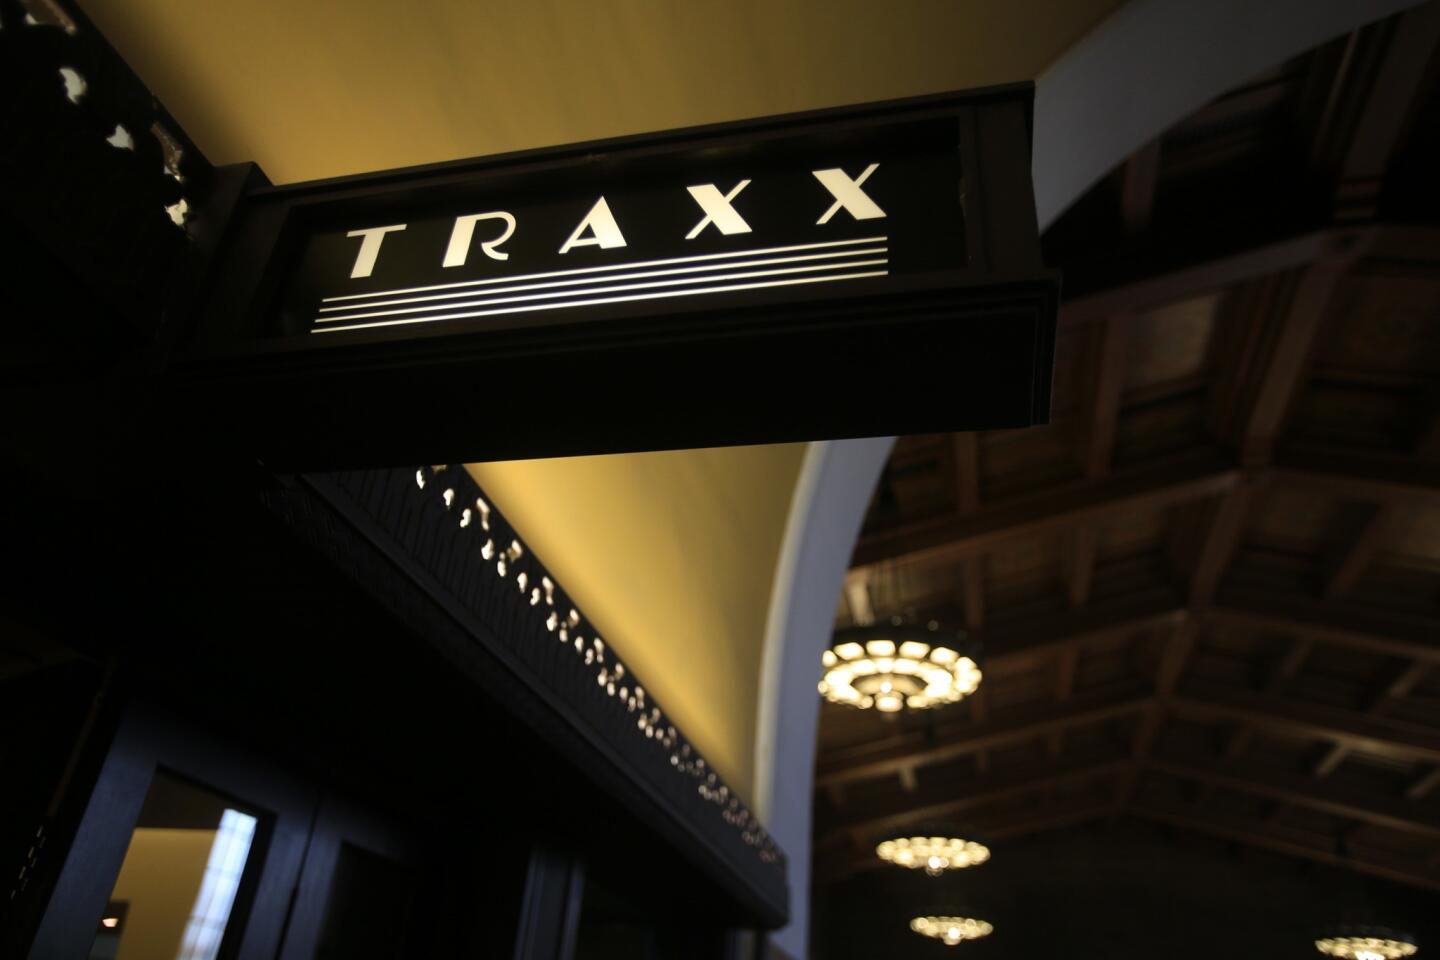 Traxx Restaurant